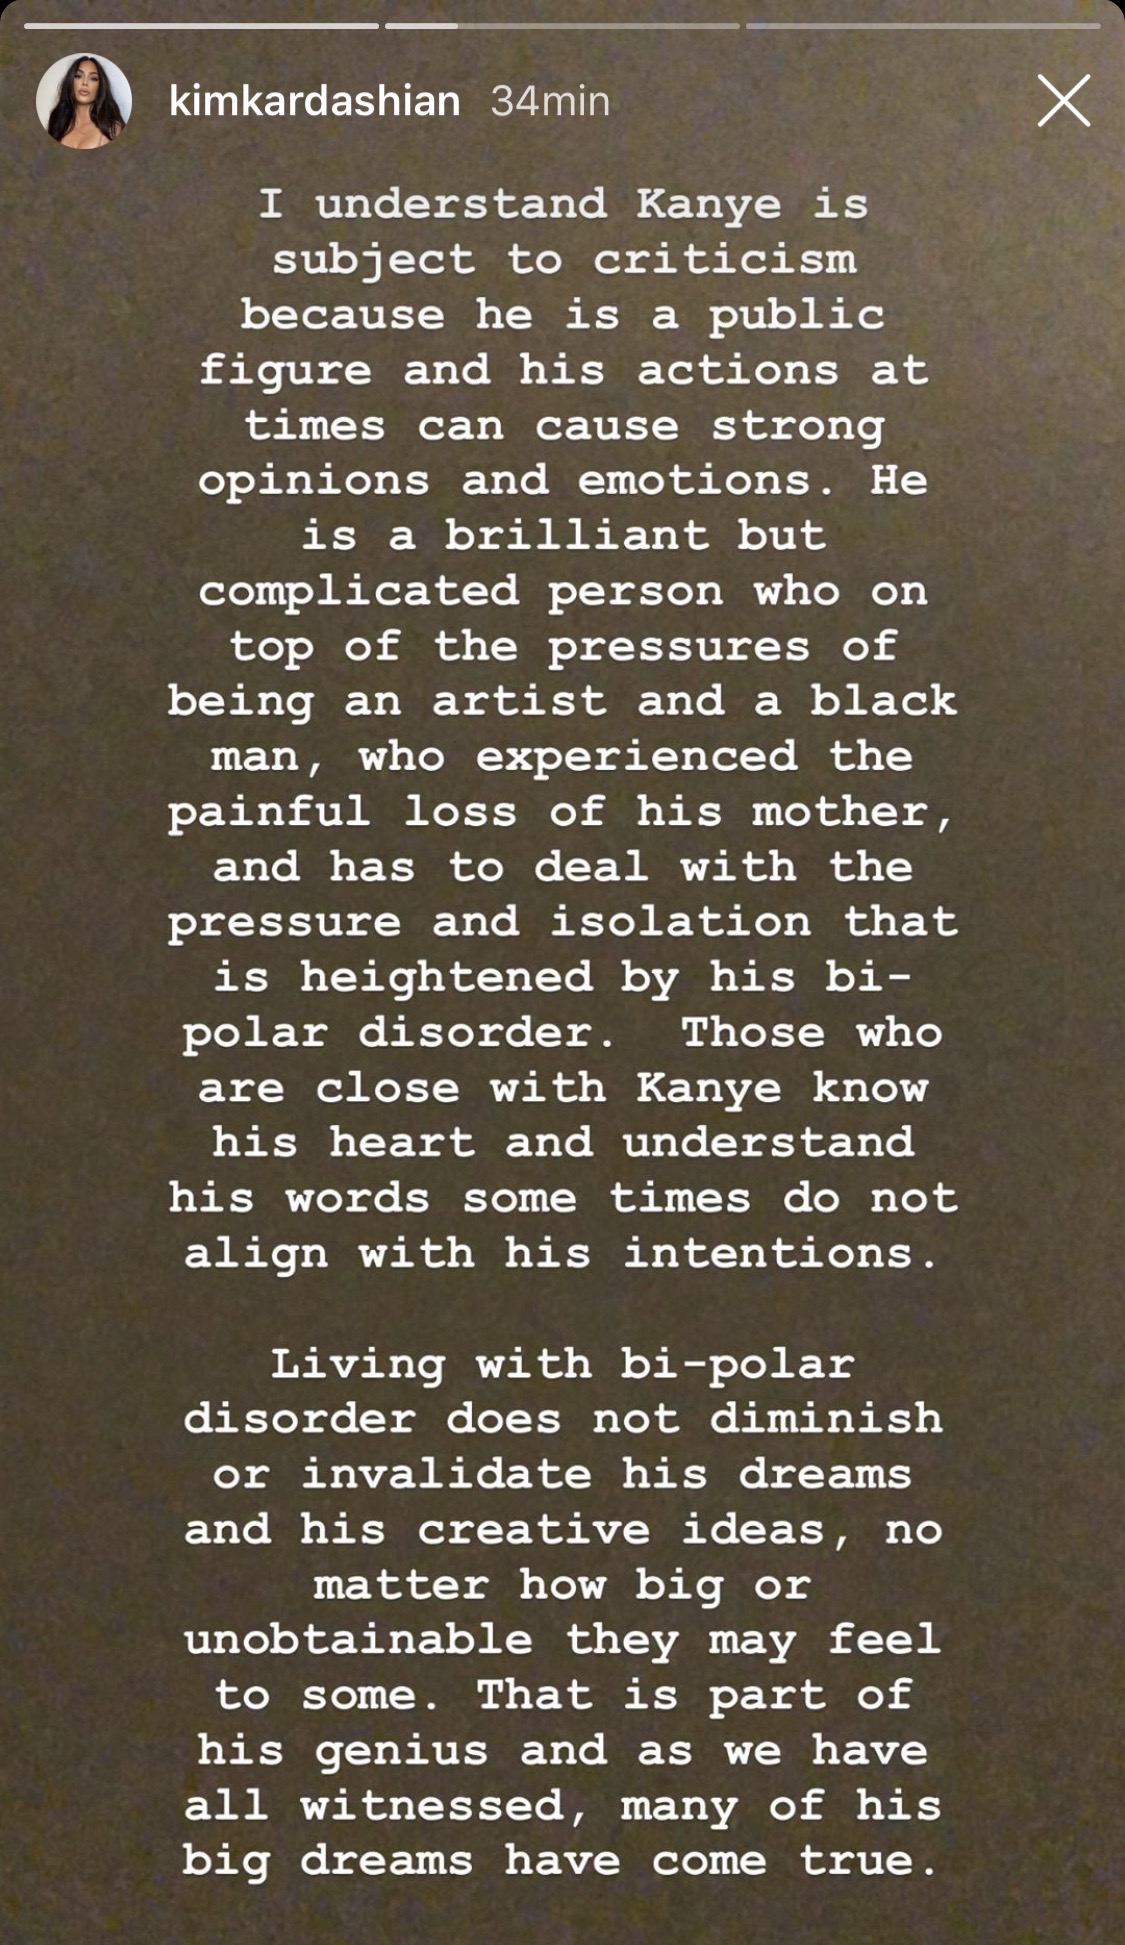 Ya salió el peine: Kanye West confiesa que ha intentado divorciarse de Kim Kardashian